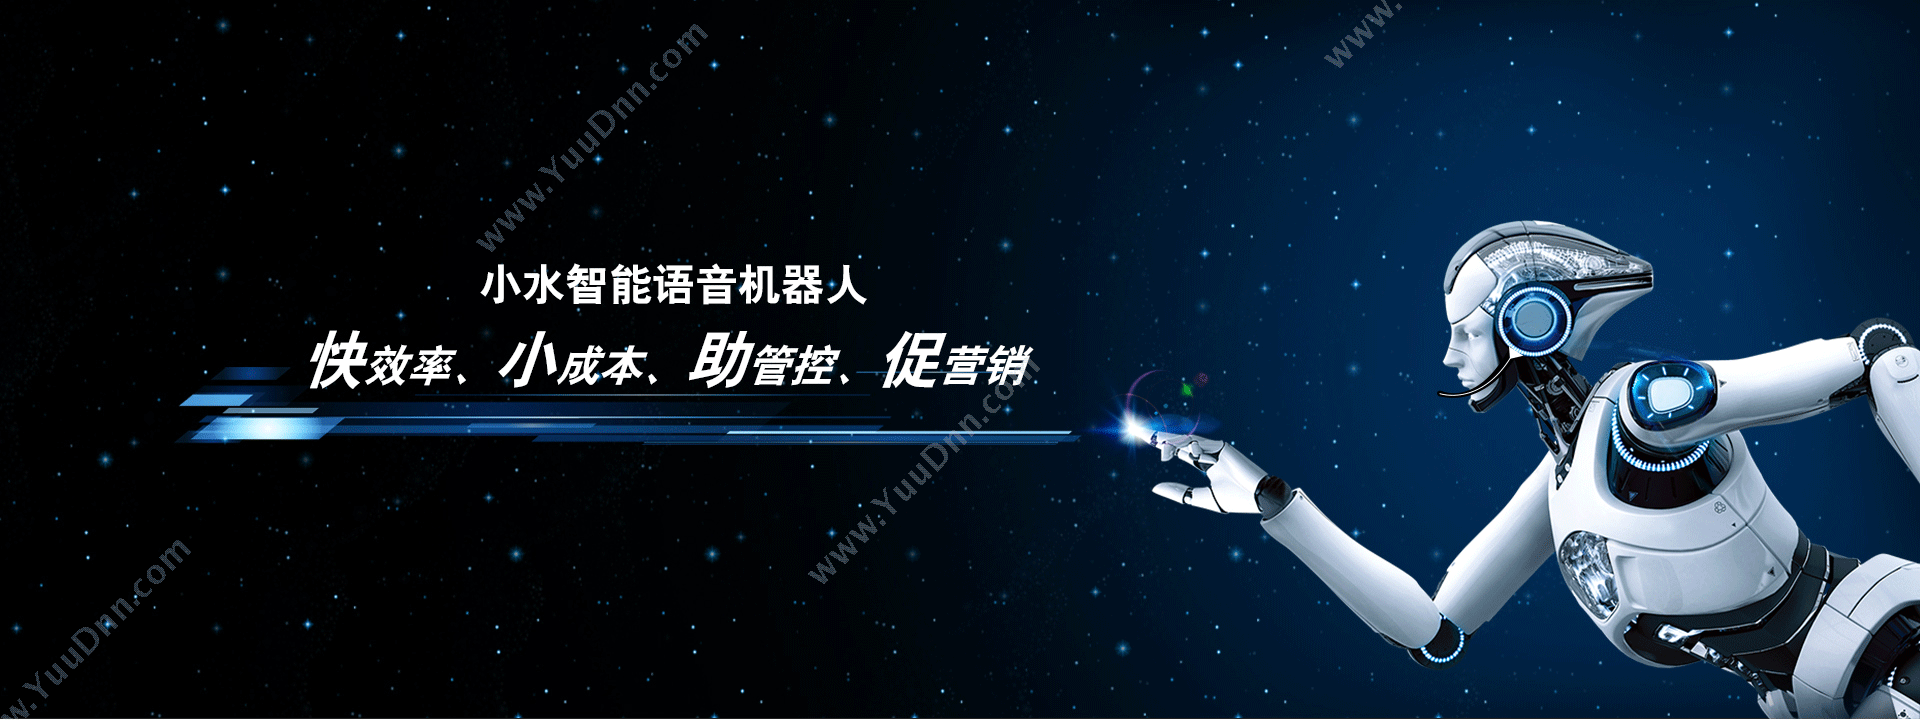 北京烽火万家科技有限公司 小水智能语音机器人 客服机器人